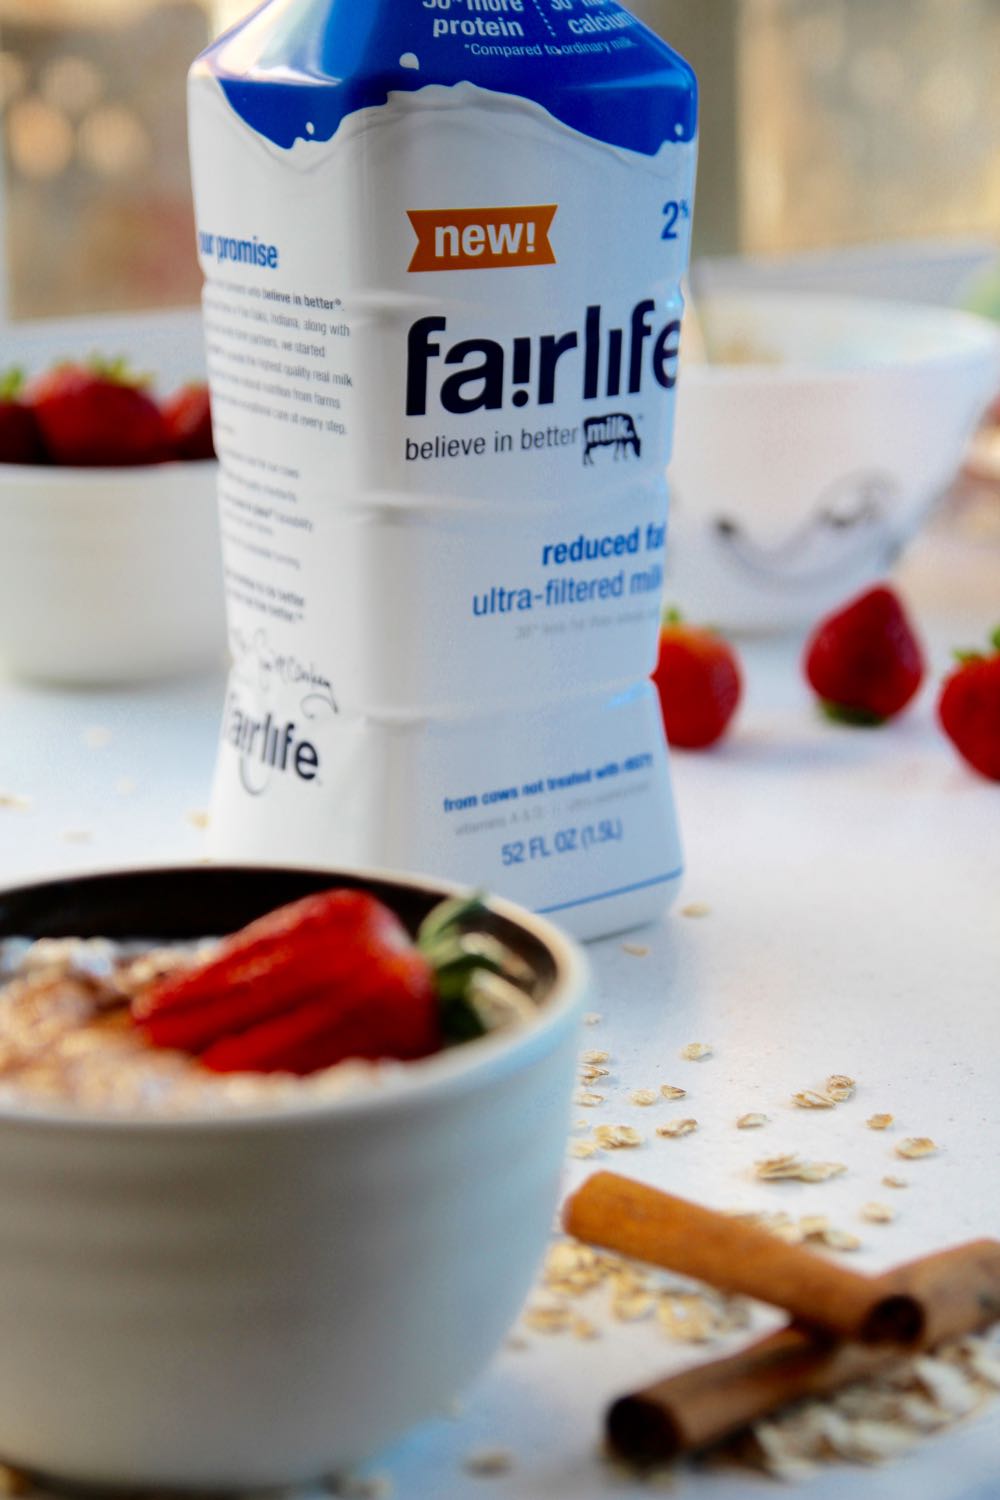 fairlife milk recipe ideas